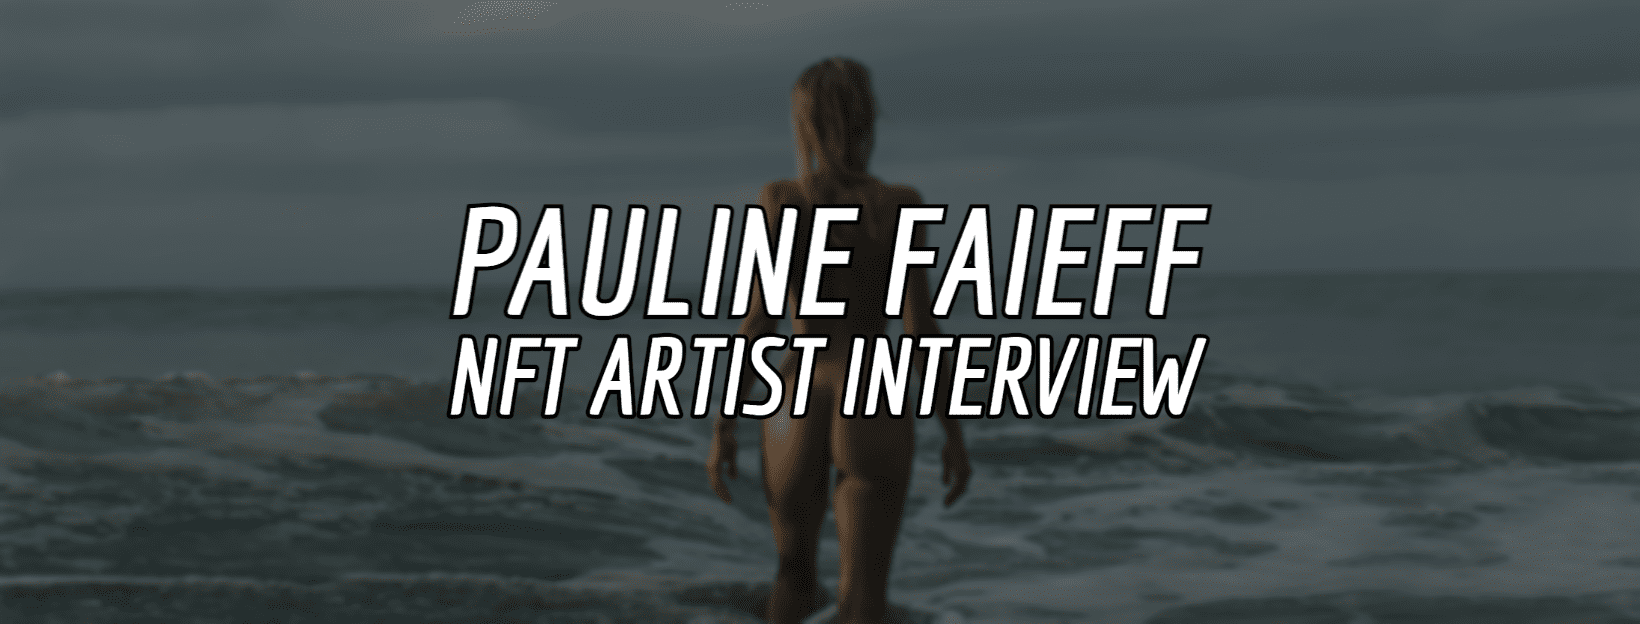 Pauline Faieff NFT Artist Interview